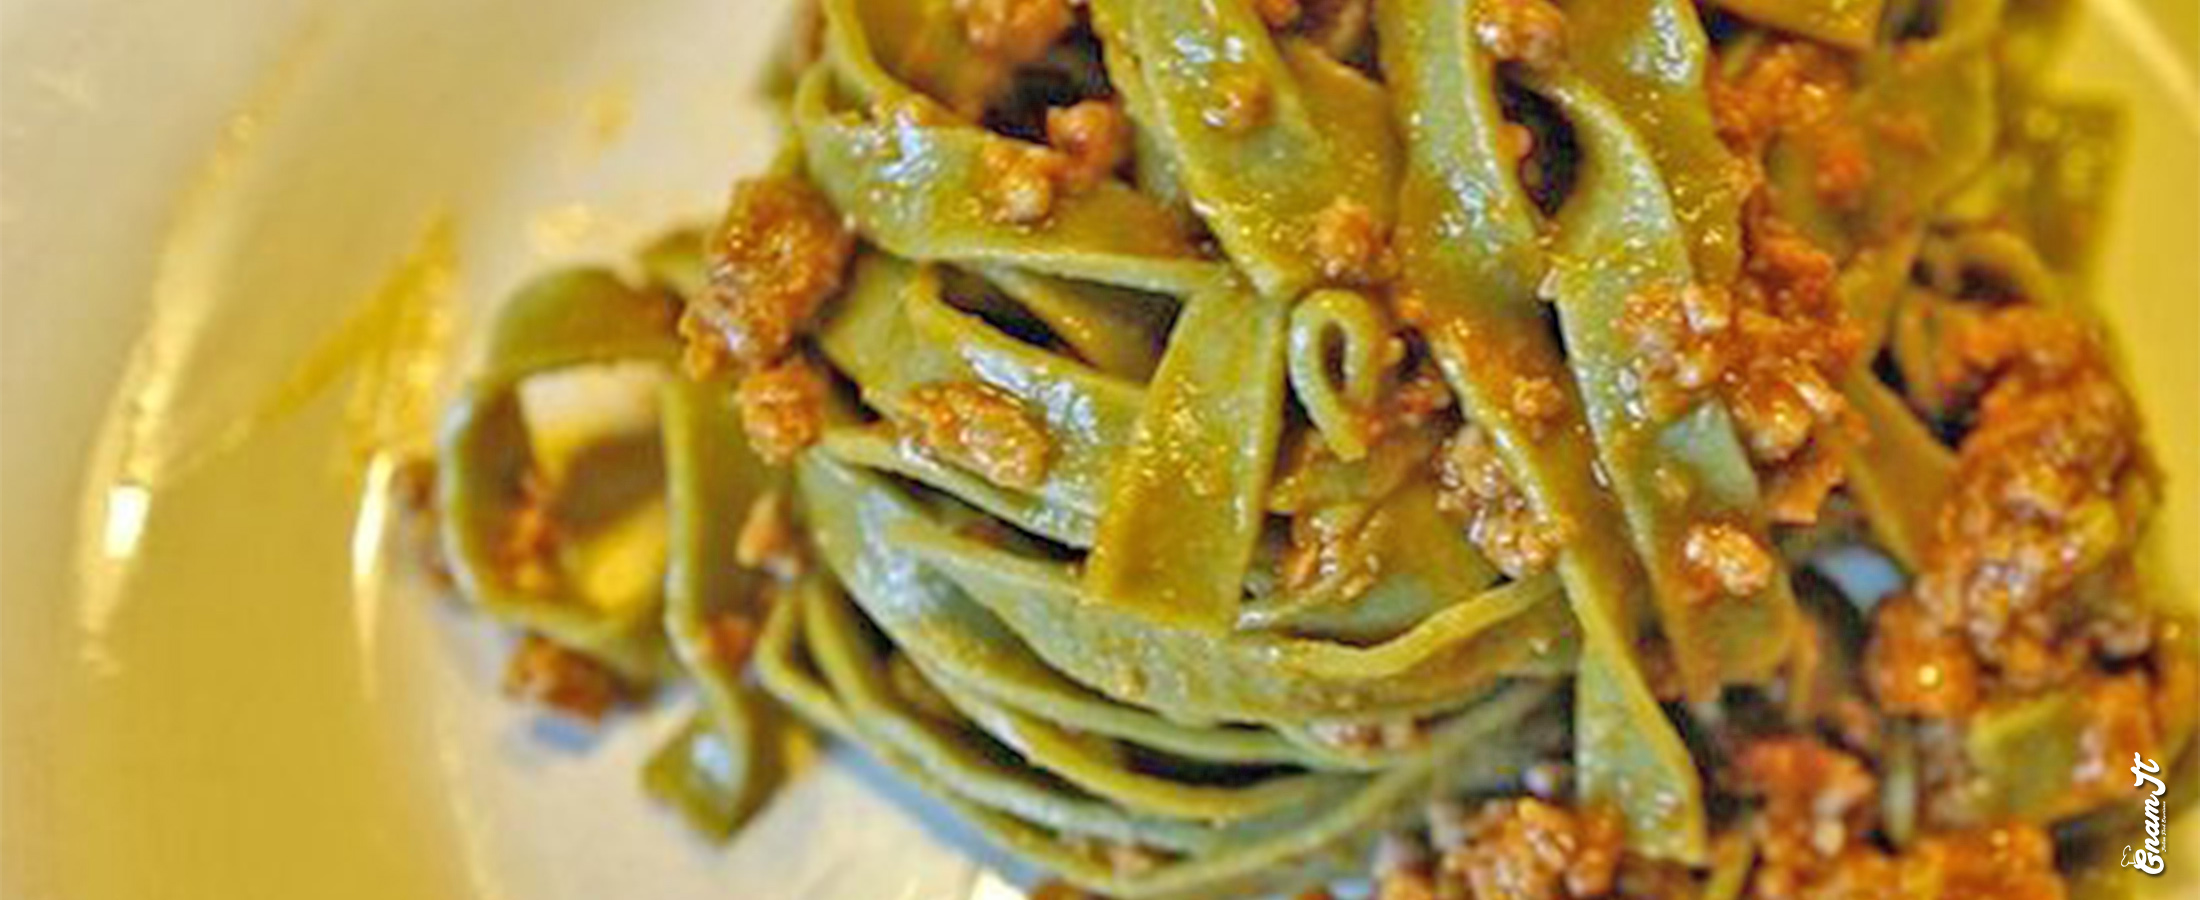 Tagliatelle verdi agli spinaci - Gnamit: Il portale delle ricette